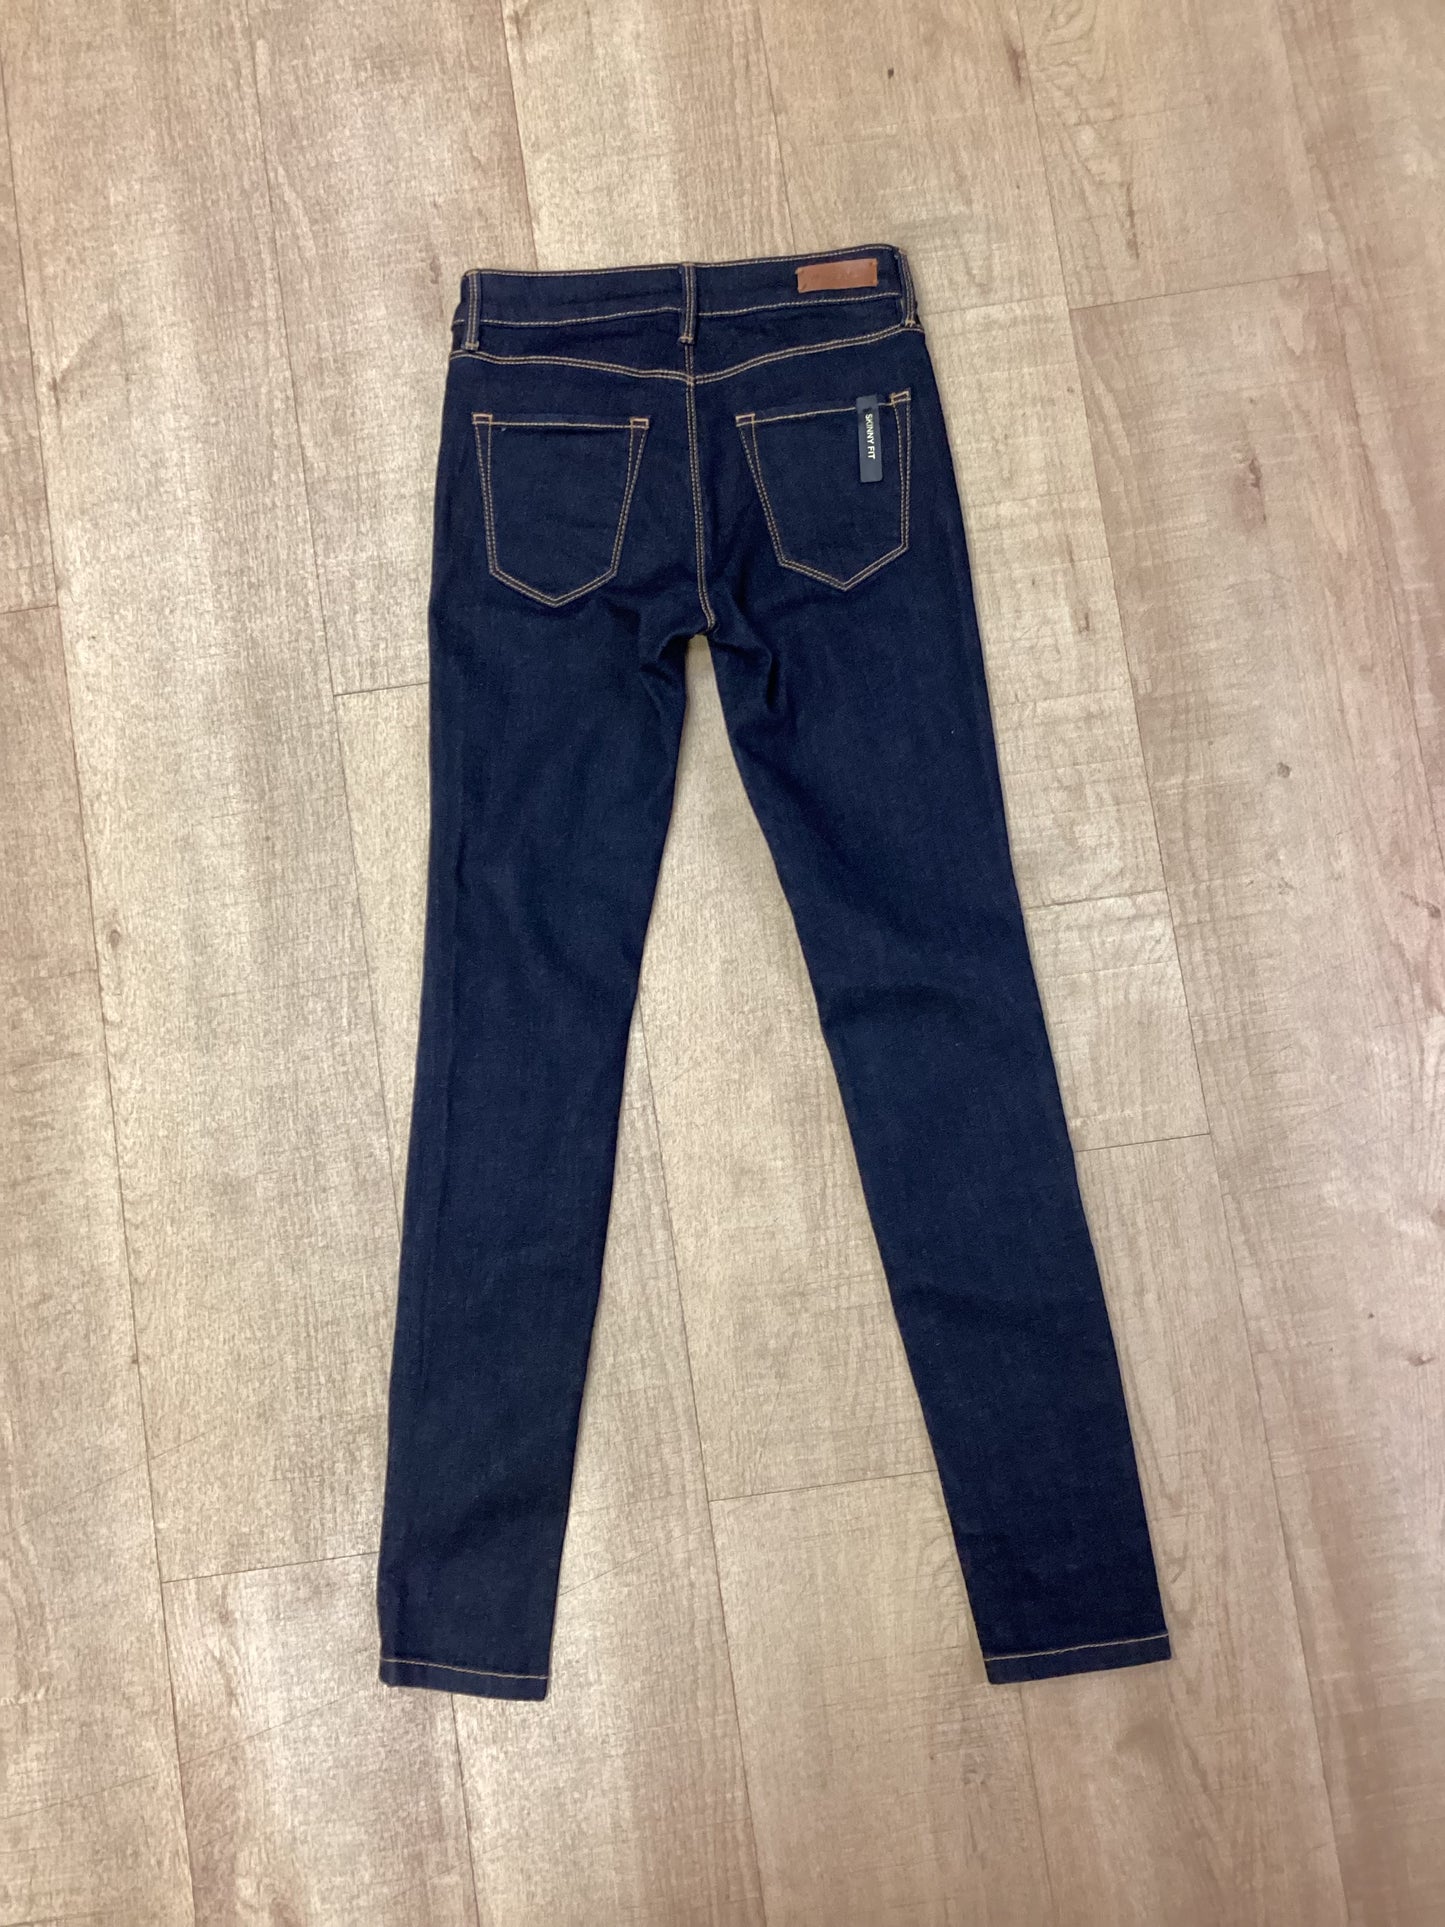 Massimo Dutti Dark Blue Skinny Jeans Size XXS (EU34)